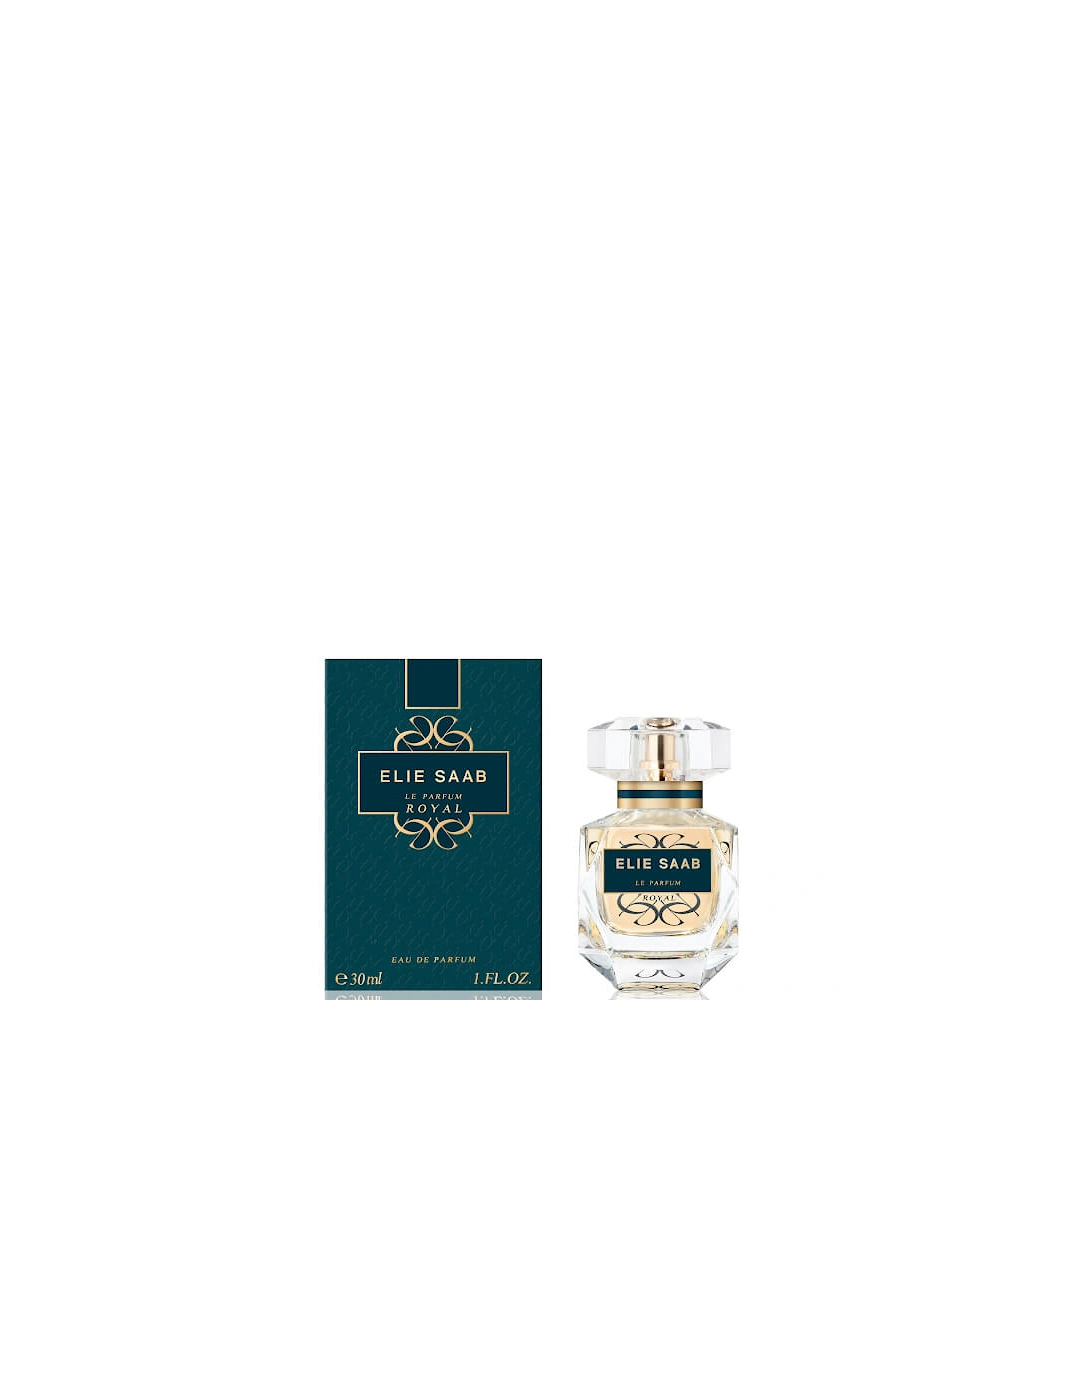 Le Parfum Royal Eau de Parfum 30ml, 2 of 1